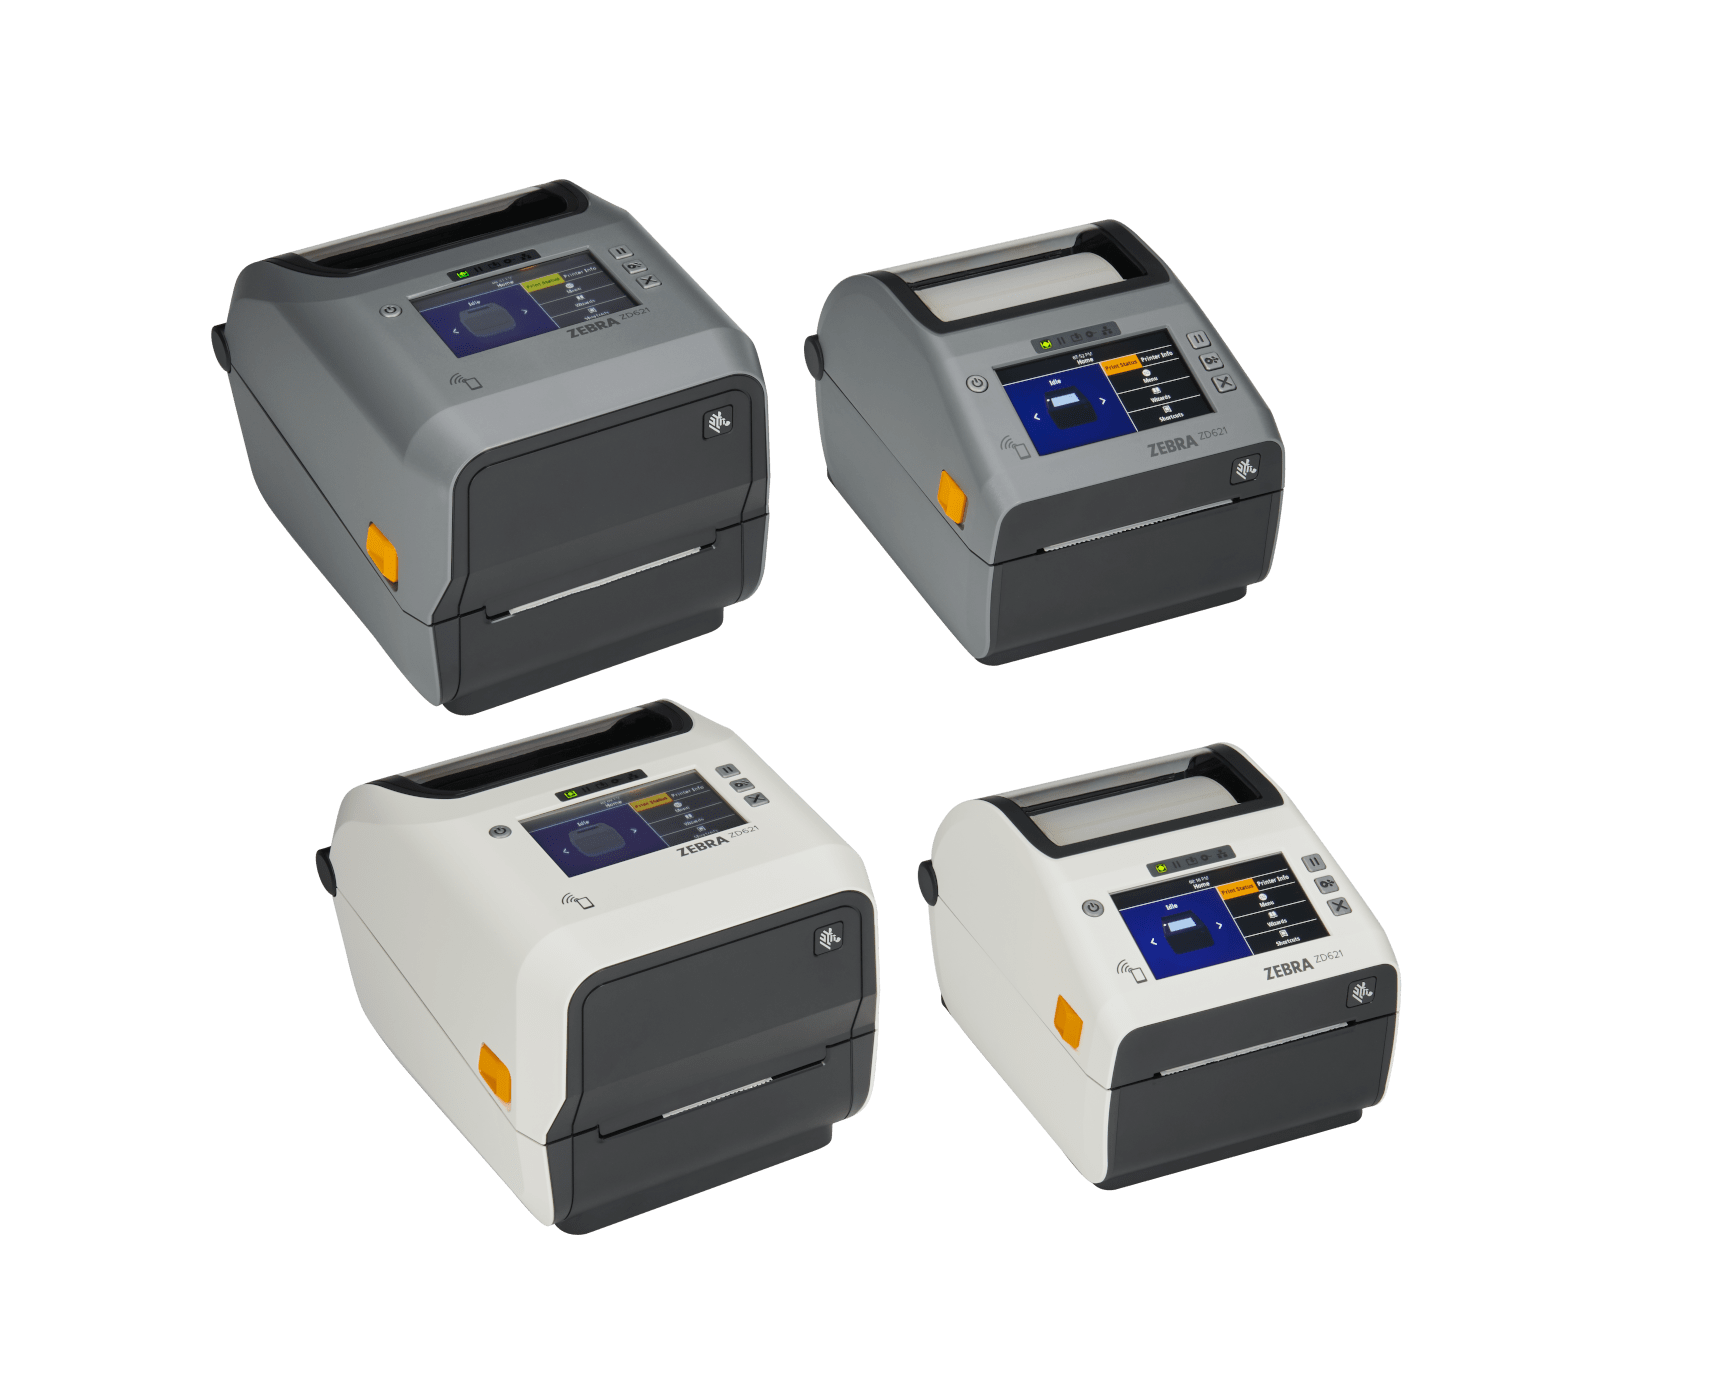 Zebra ZD600 Series 4-Inch Desktop Printers